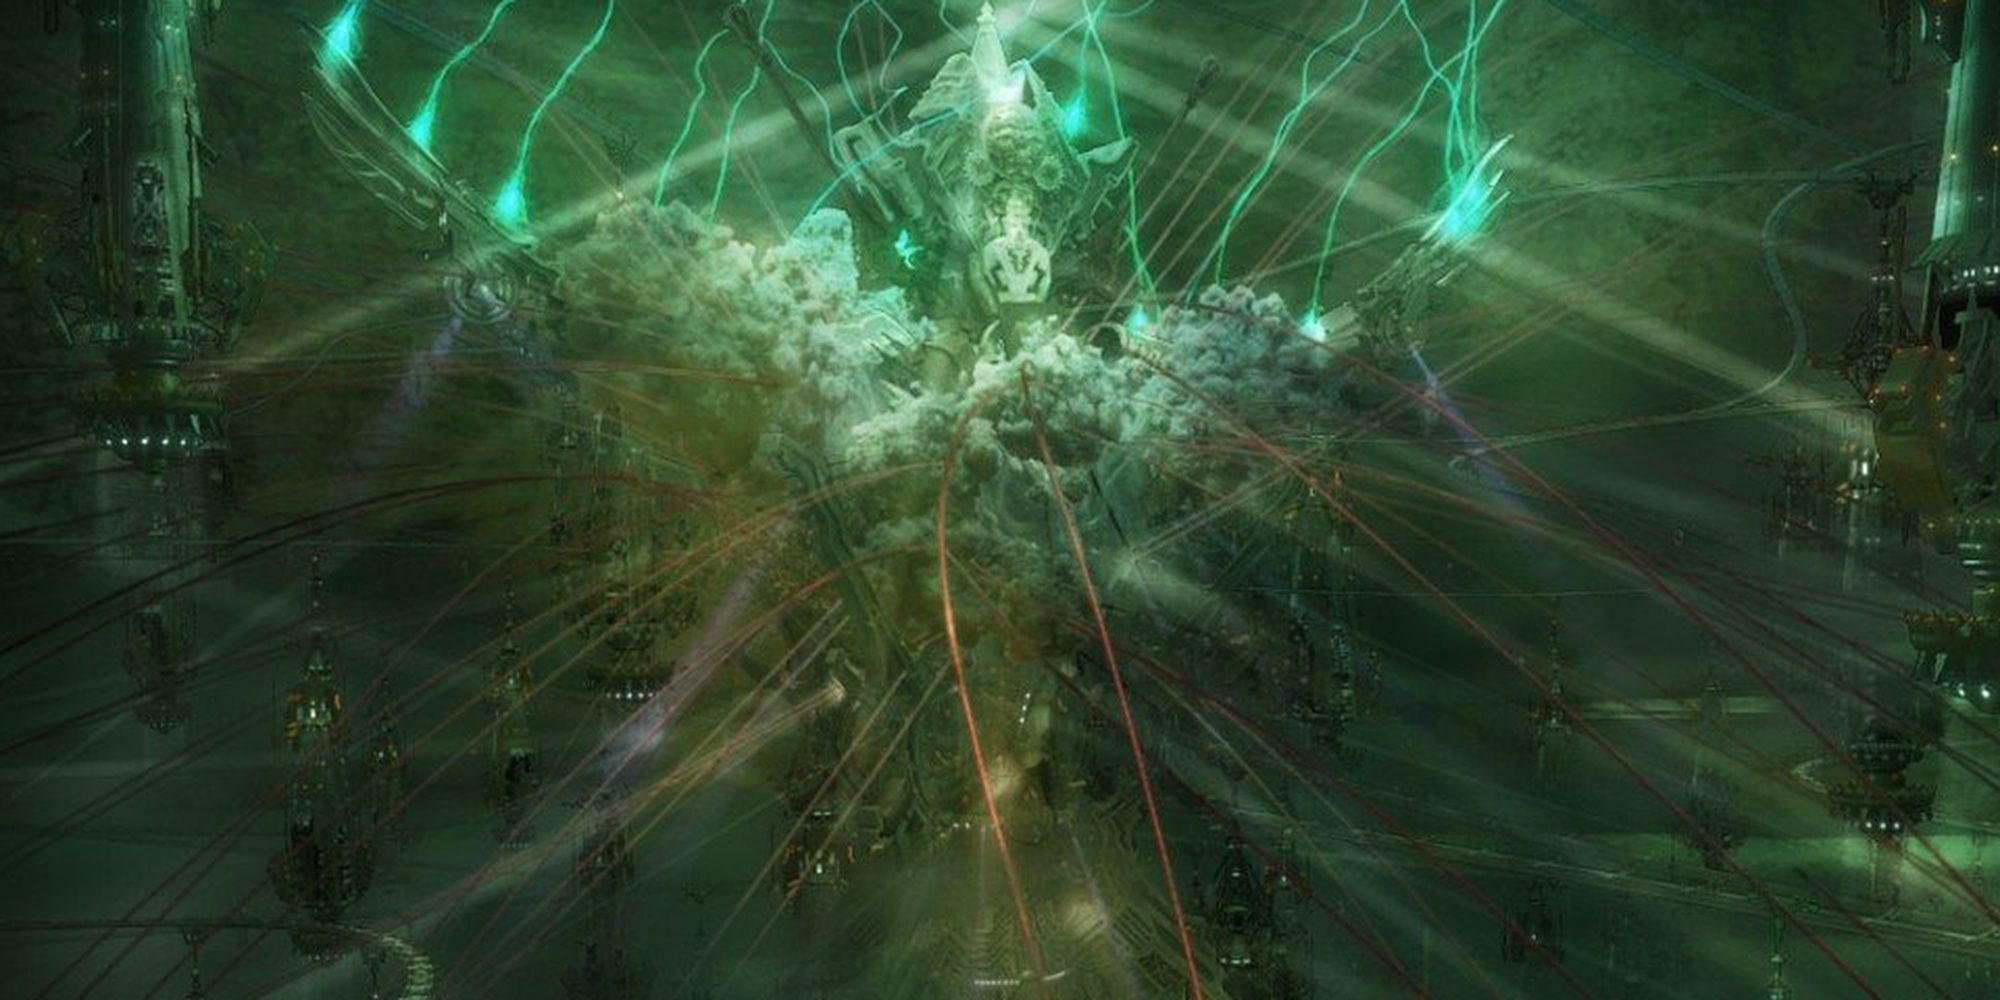 Интерьер Cocoon из Final Fantasy 13. Воздух зеленый, тут и там тянутся рельсы, а в центре возвышается механический шпиль.